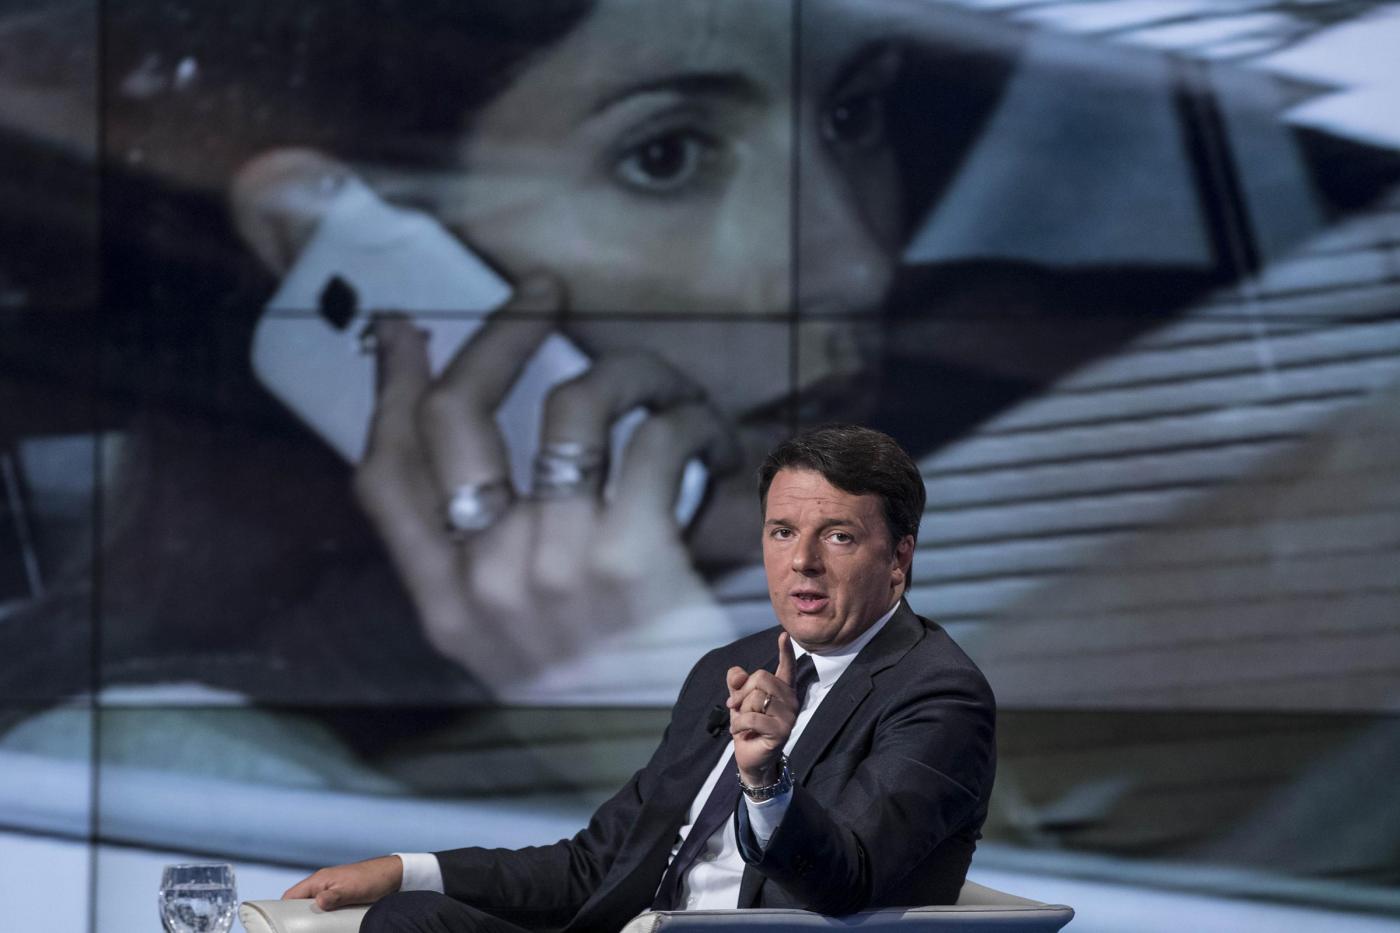 Matteo Renzi ospite a "Porta a Porta"